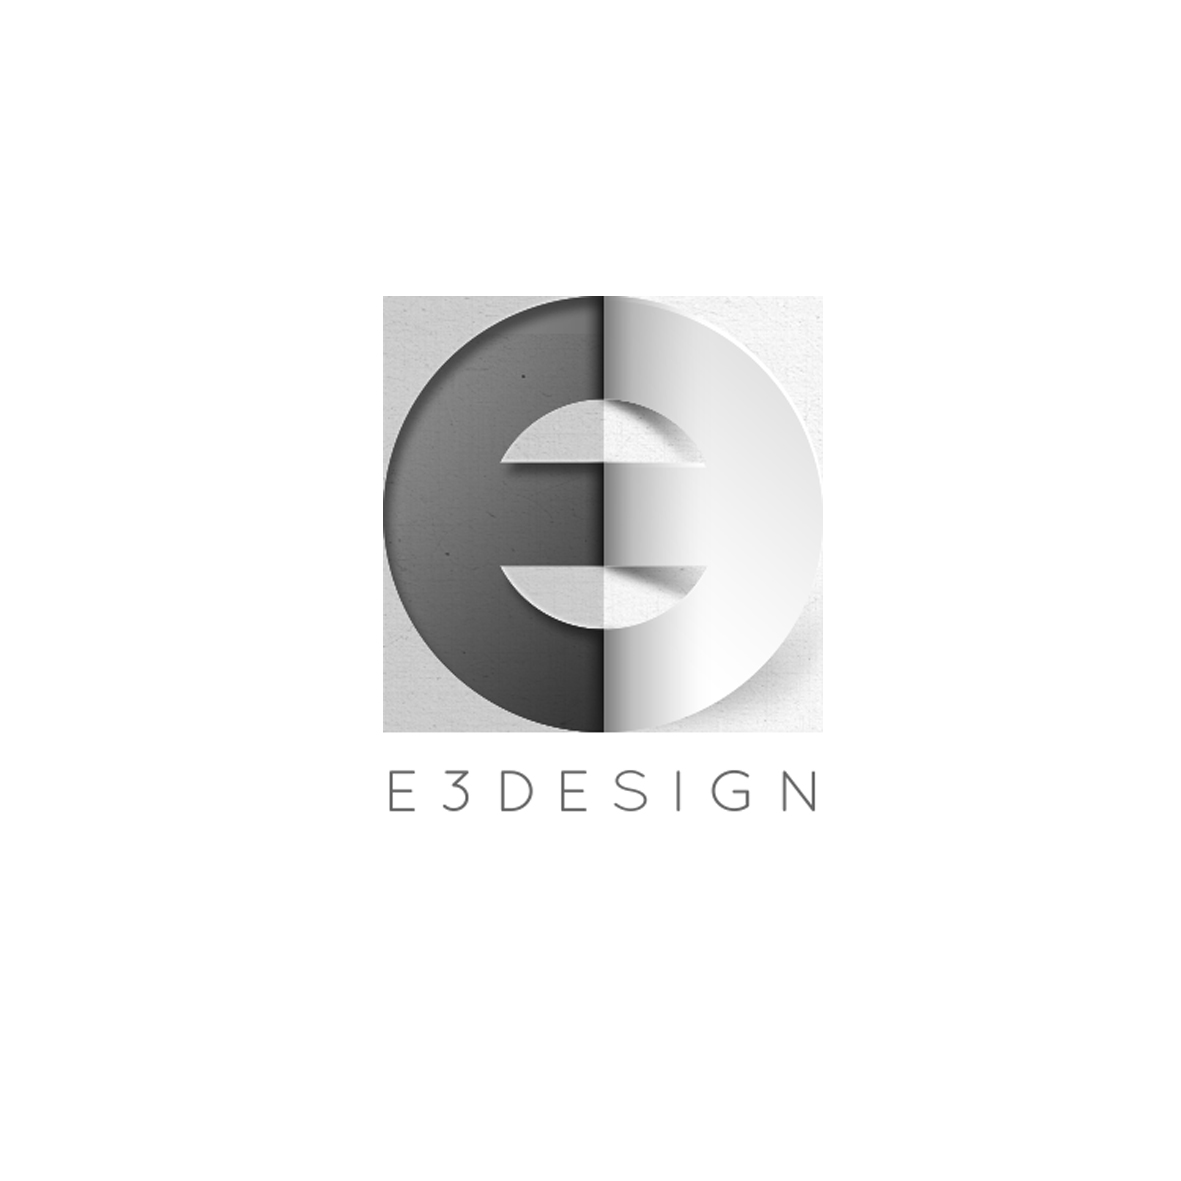 E3 Design